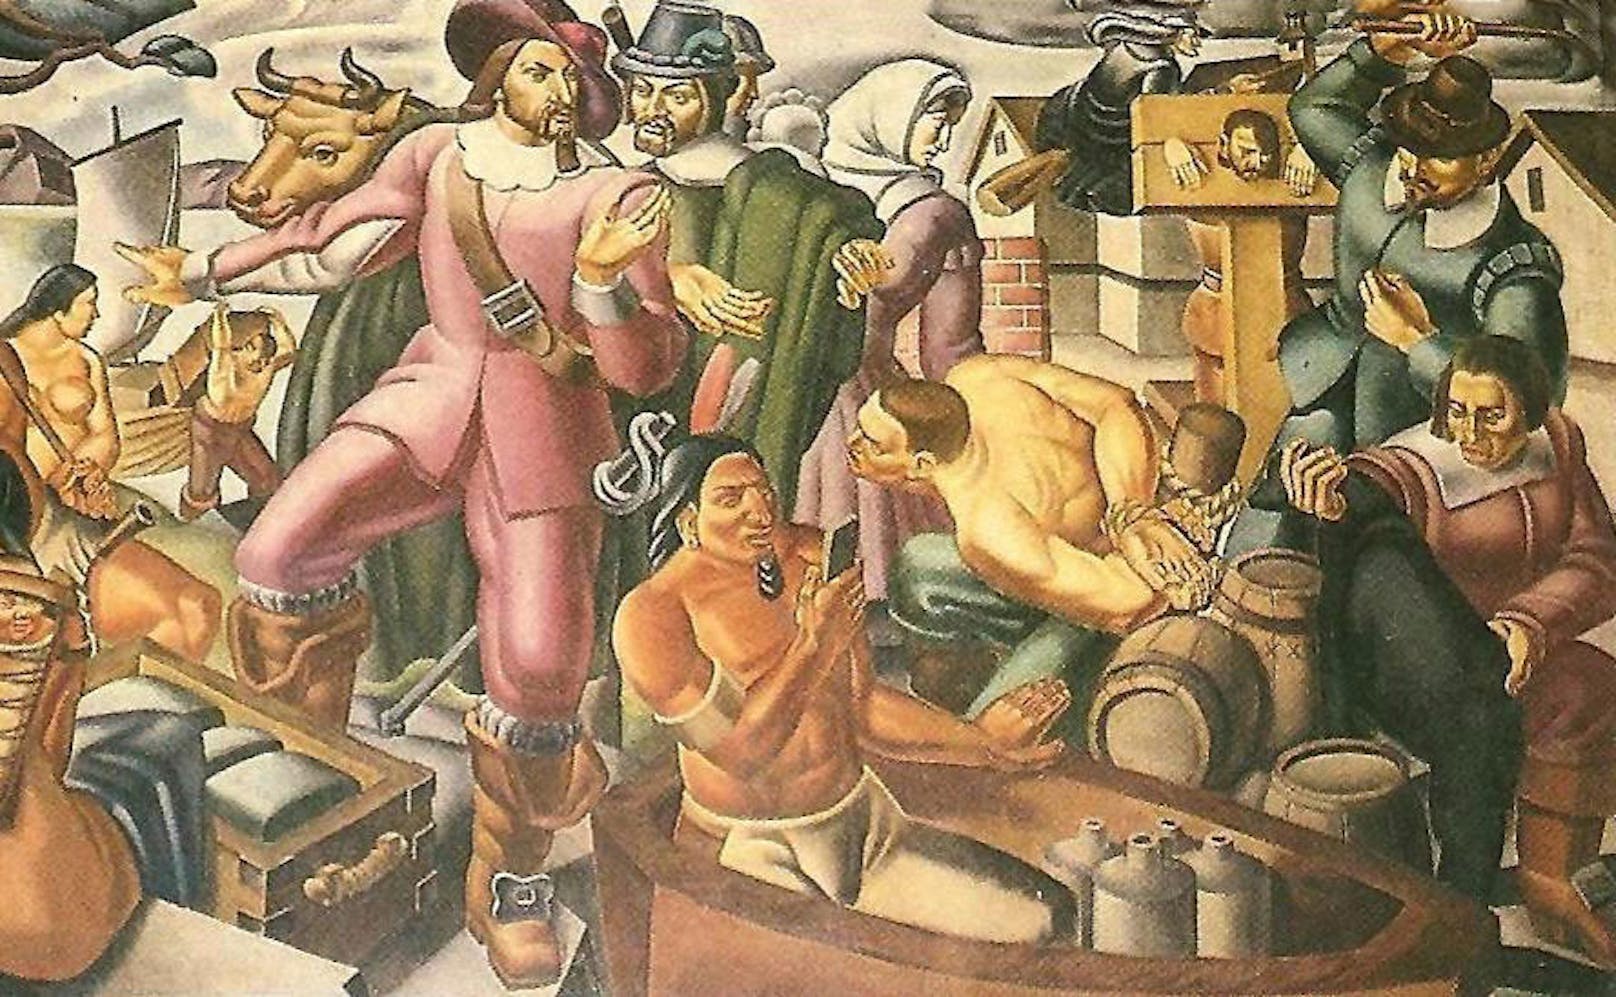 Und natürlich ist auch auf dem Gemälde "Mr Pynchon and the Settling of Springfield" von 1937 des italienischen Künstlers Umberto Romano kein Mann zu sehen, der auf sein Smartphone starrt.